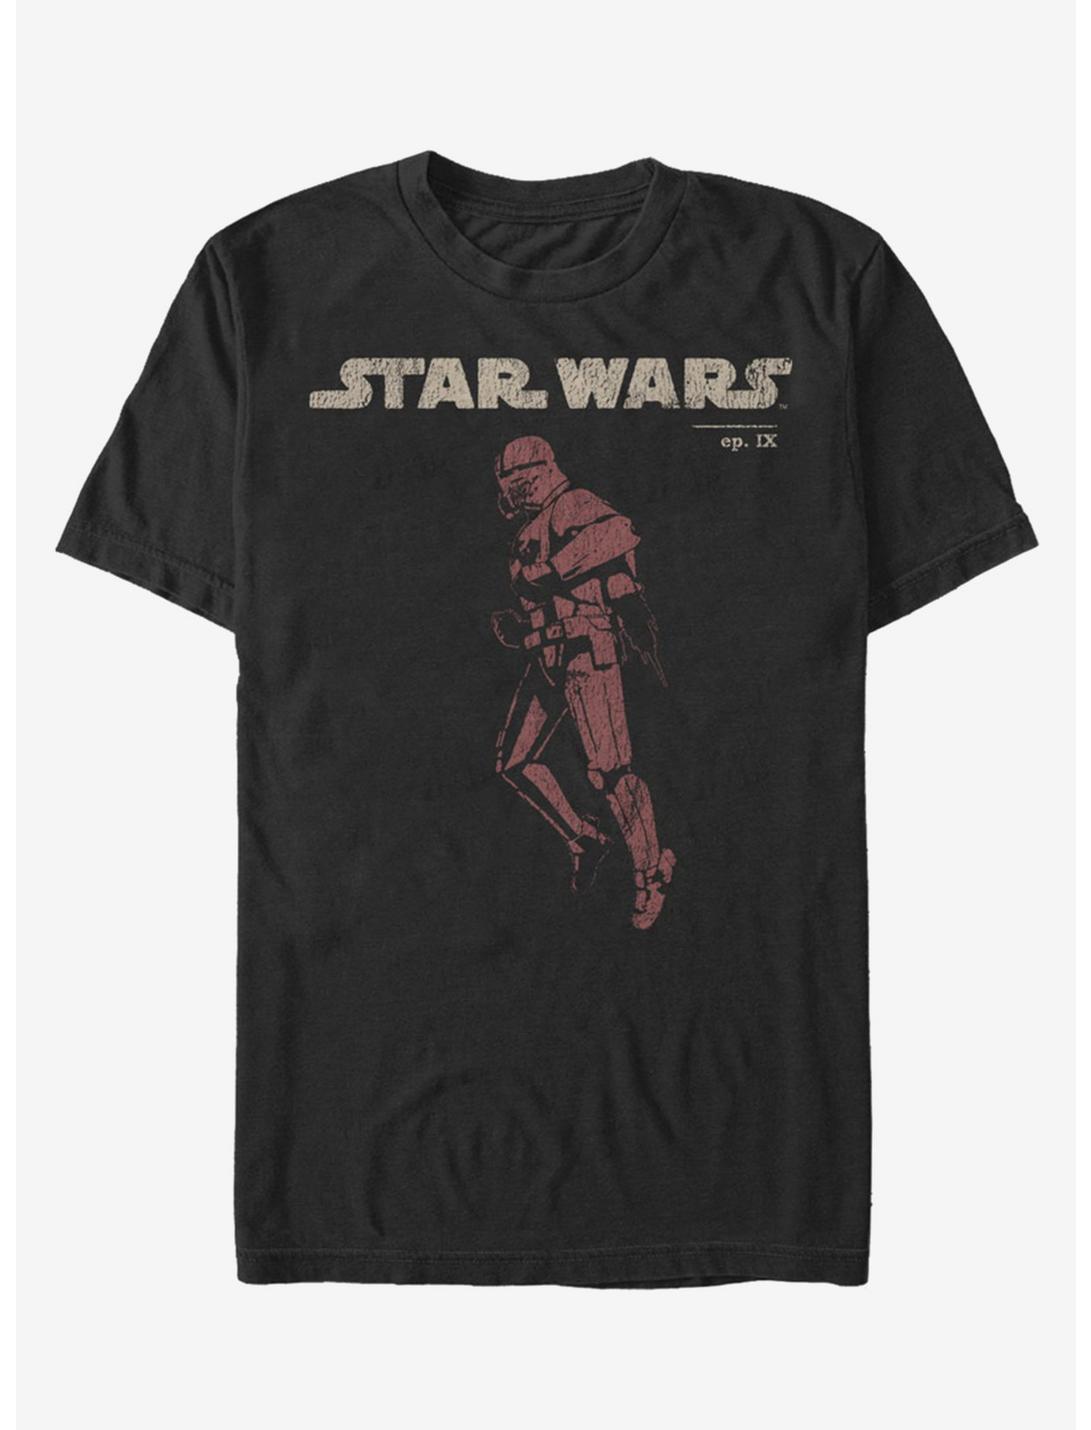 Star Wars Episode IX The Rise Of Skywalker Jet Red T-Shirt, BLACK, hi-res